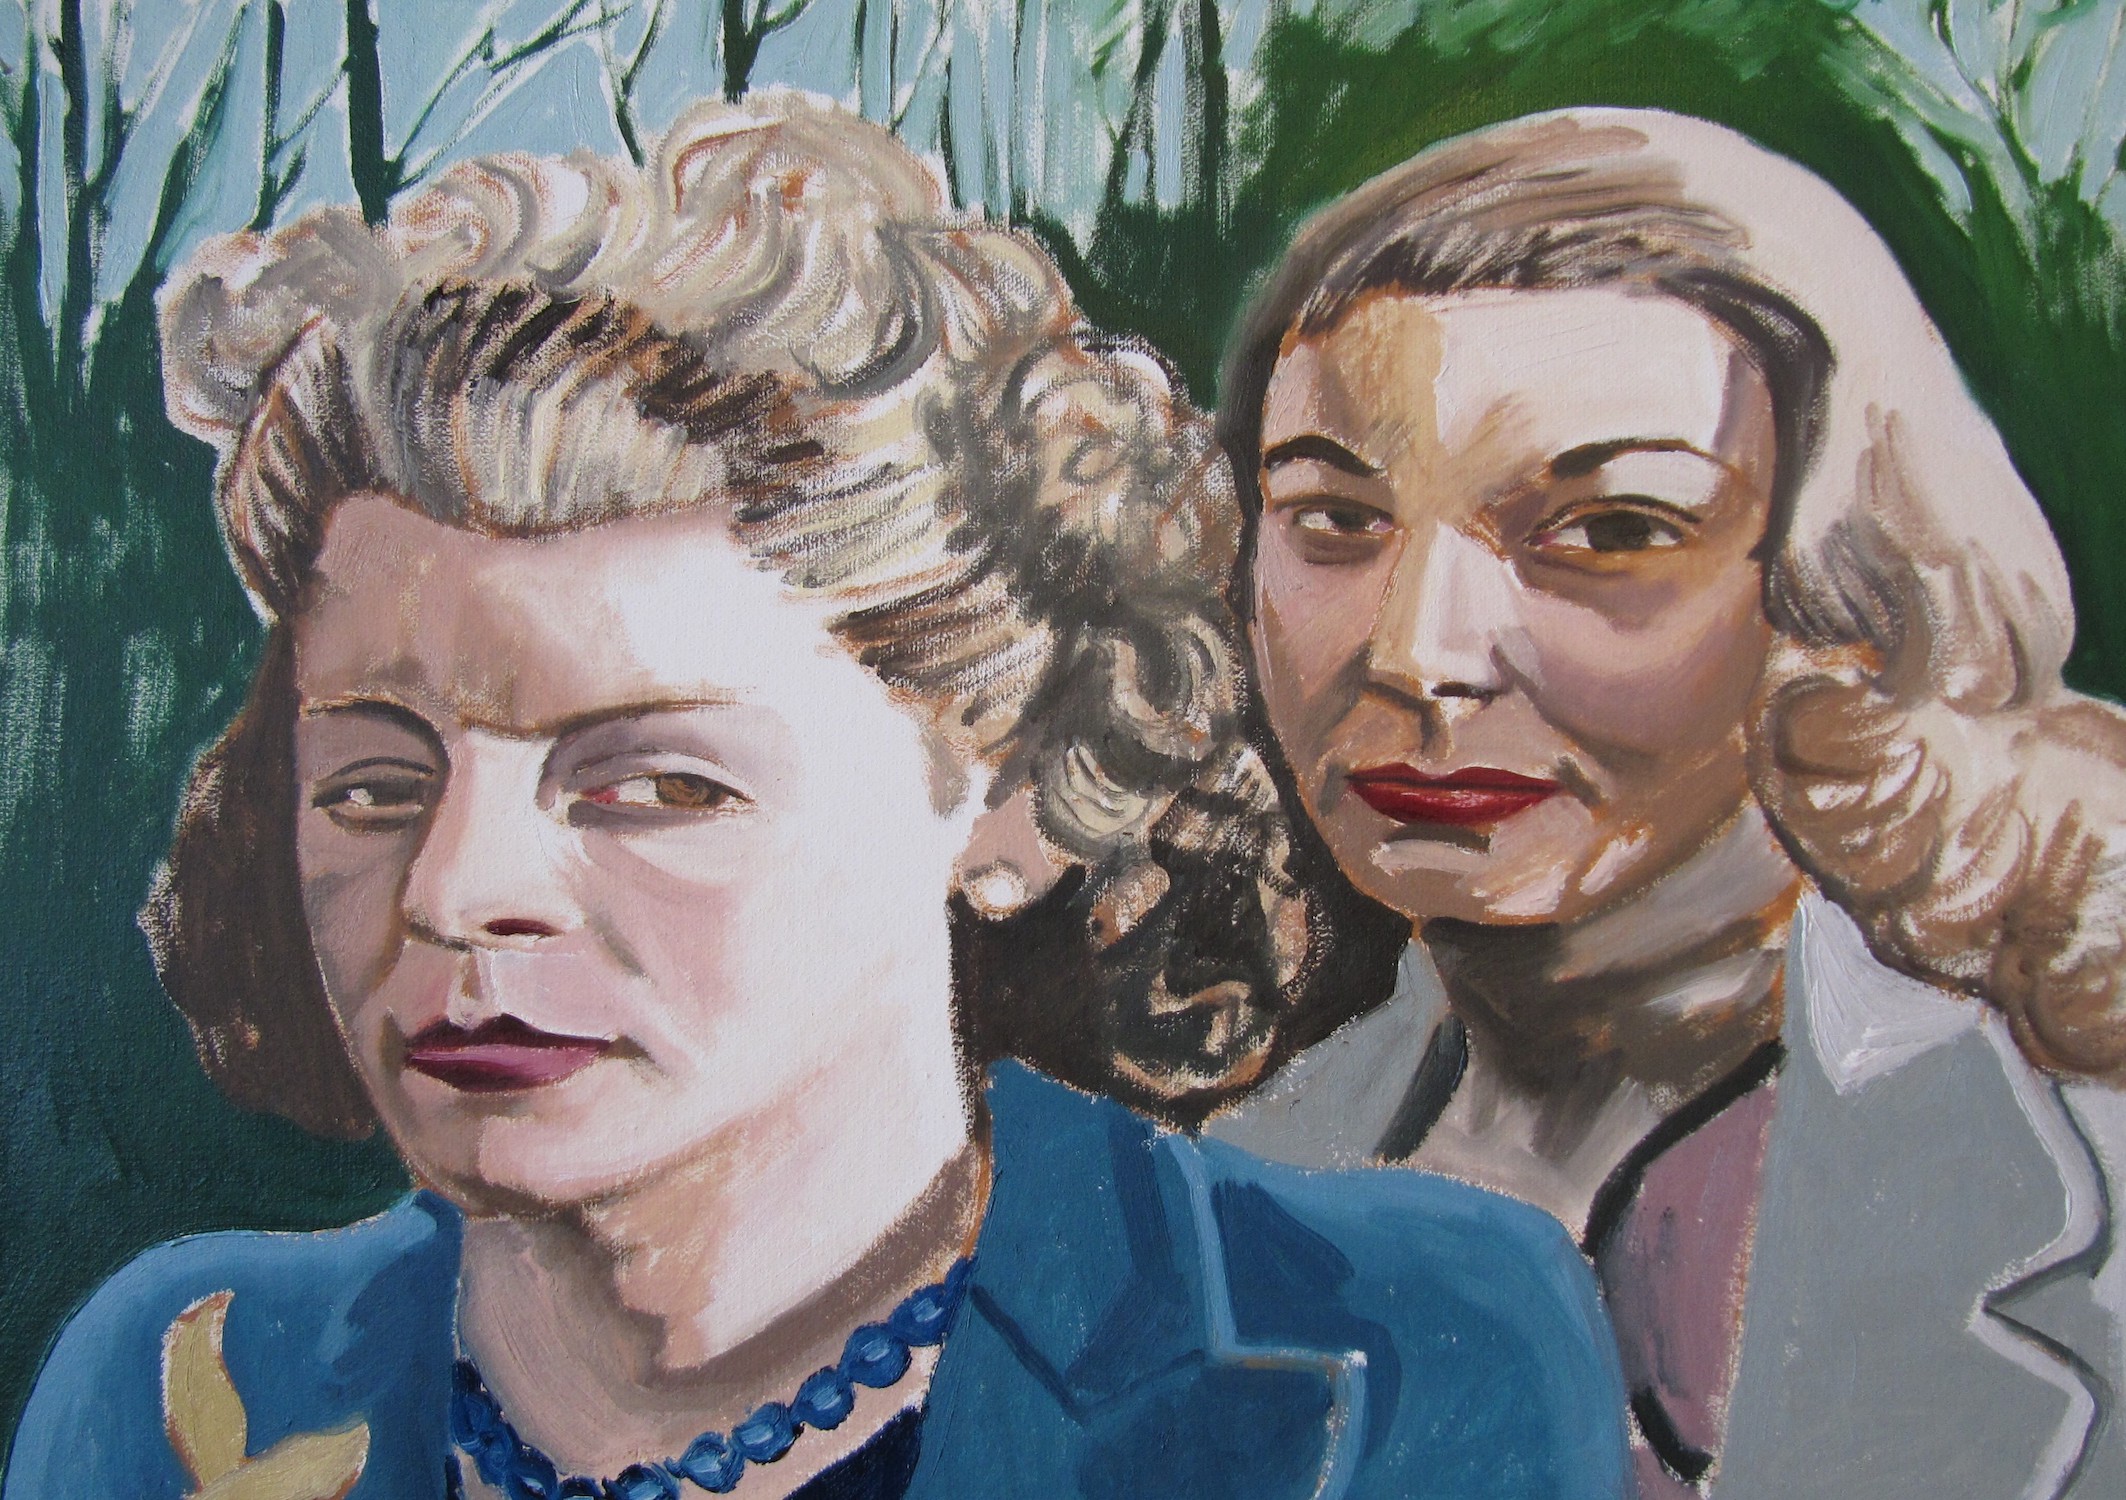 'Sisters', Graeme Morris, Oil on canvas, 42 x 60 cm